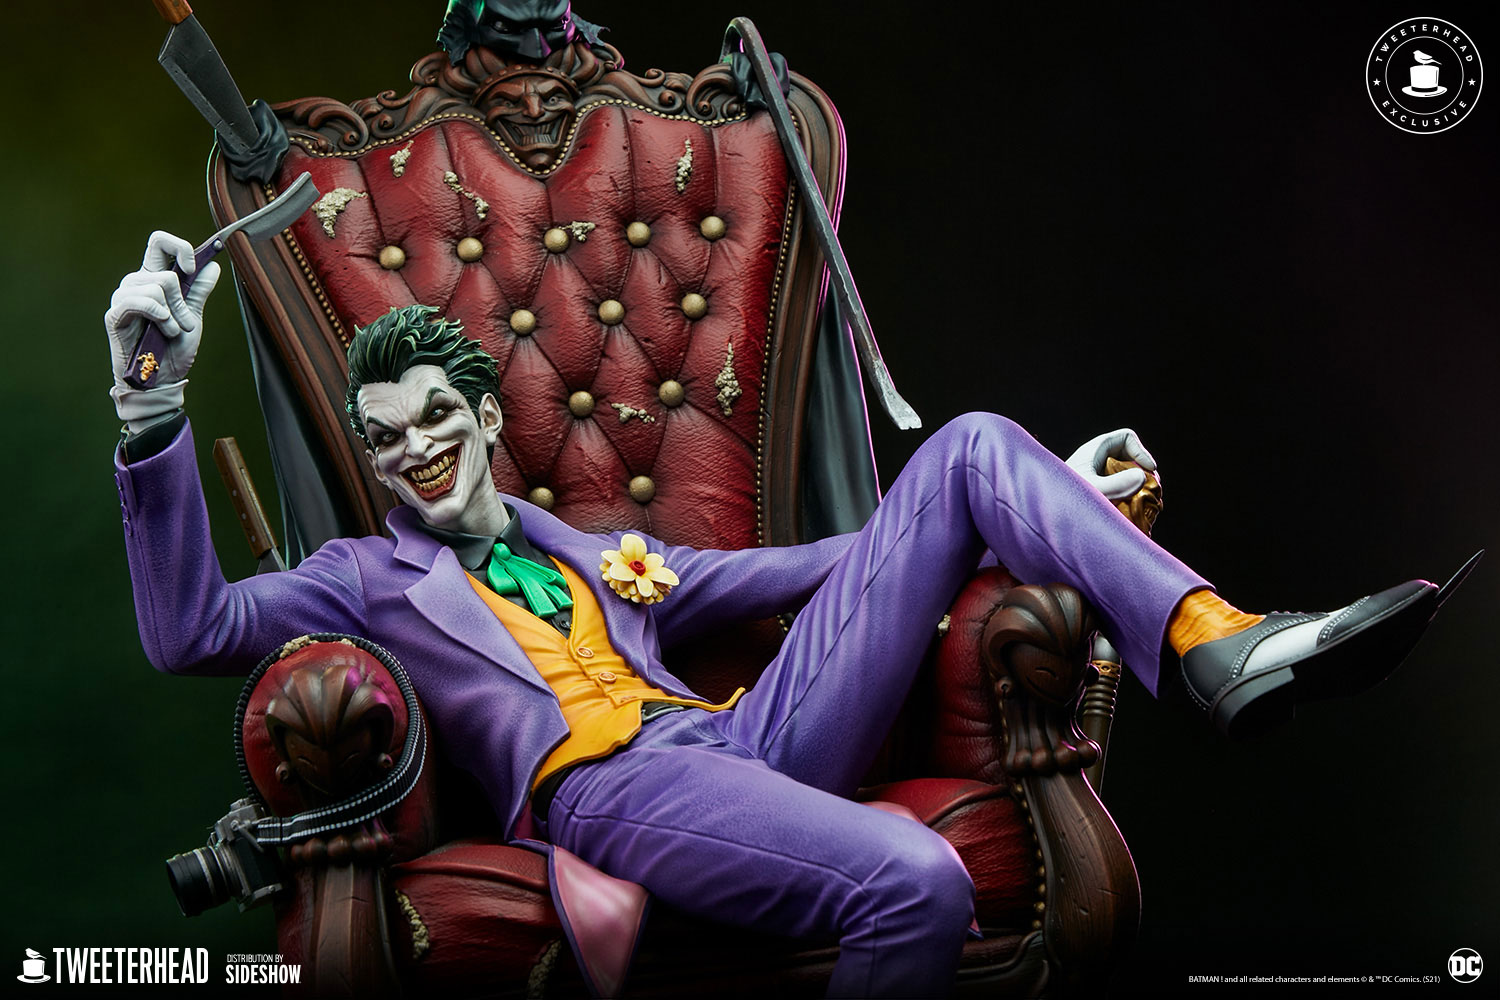 The Joker (Deluxe) Exclusive Edition - Prototype Shown